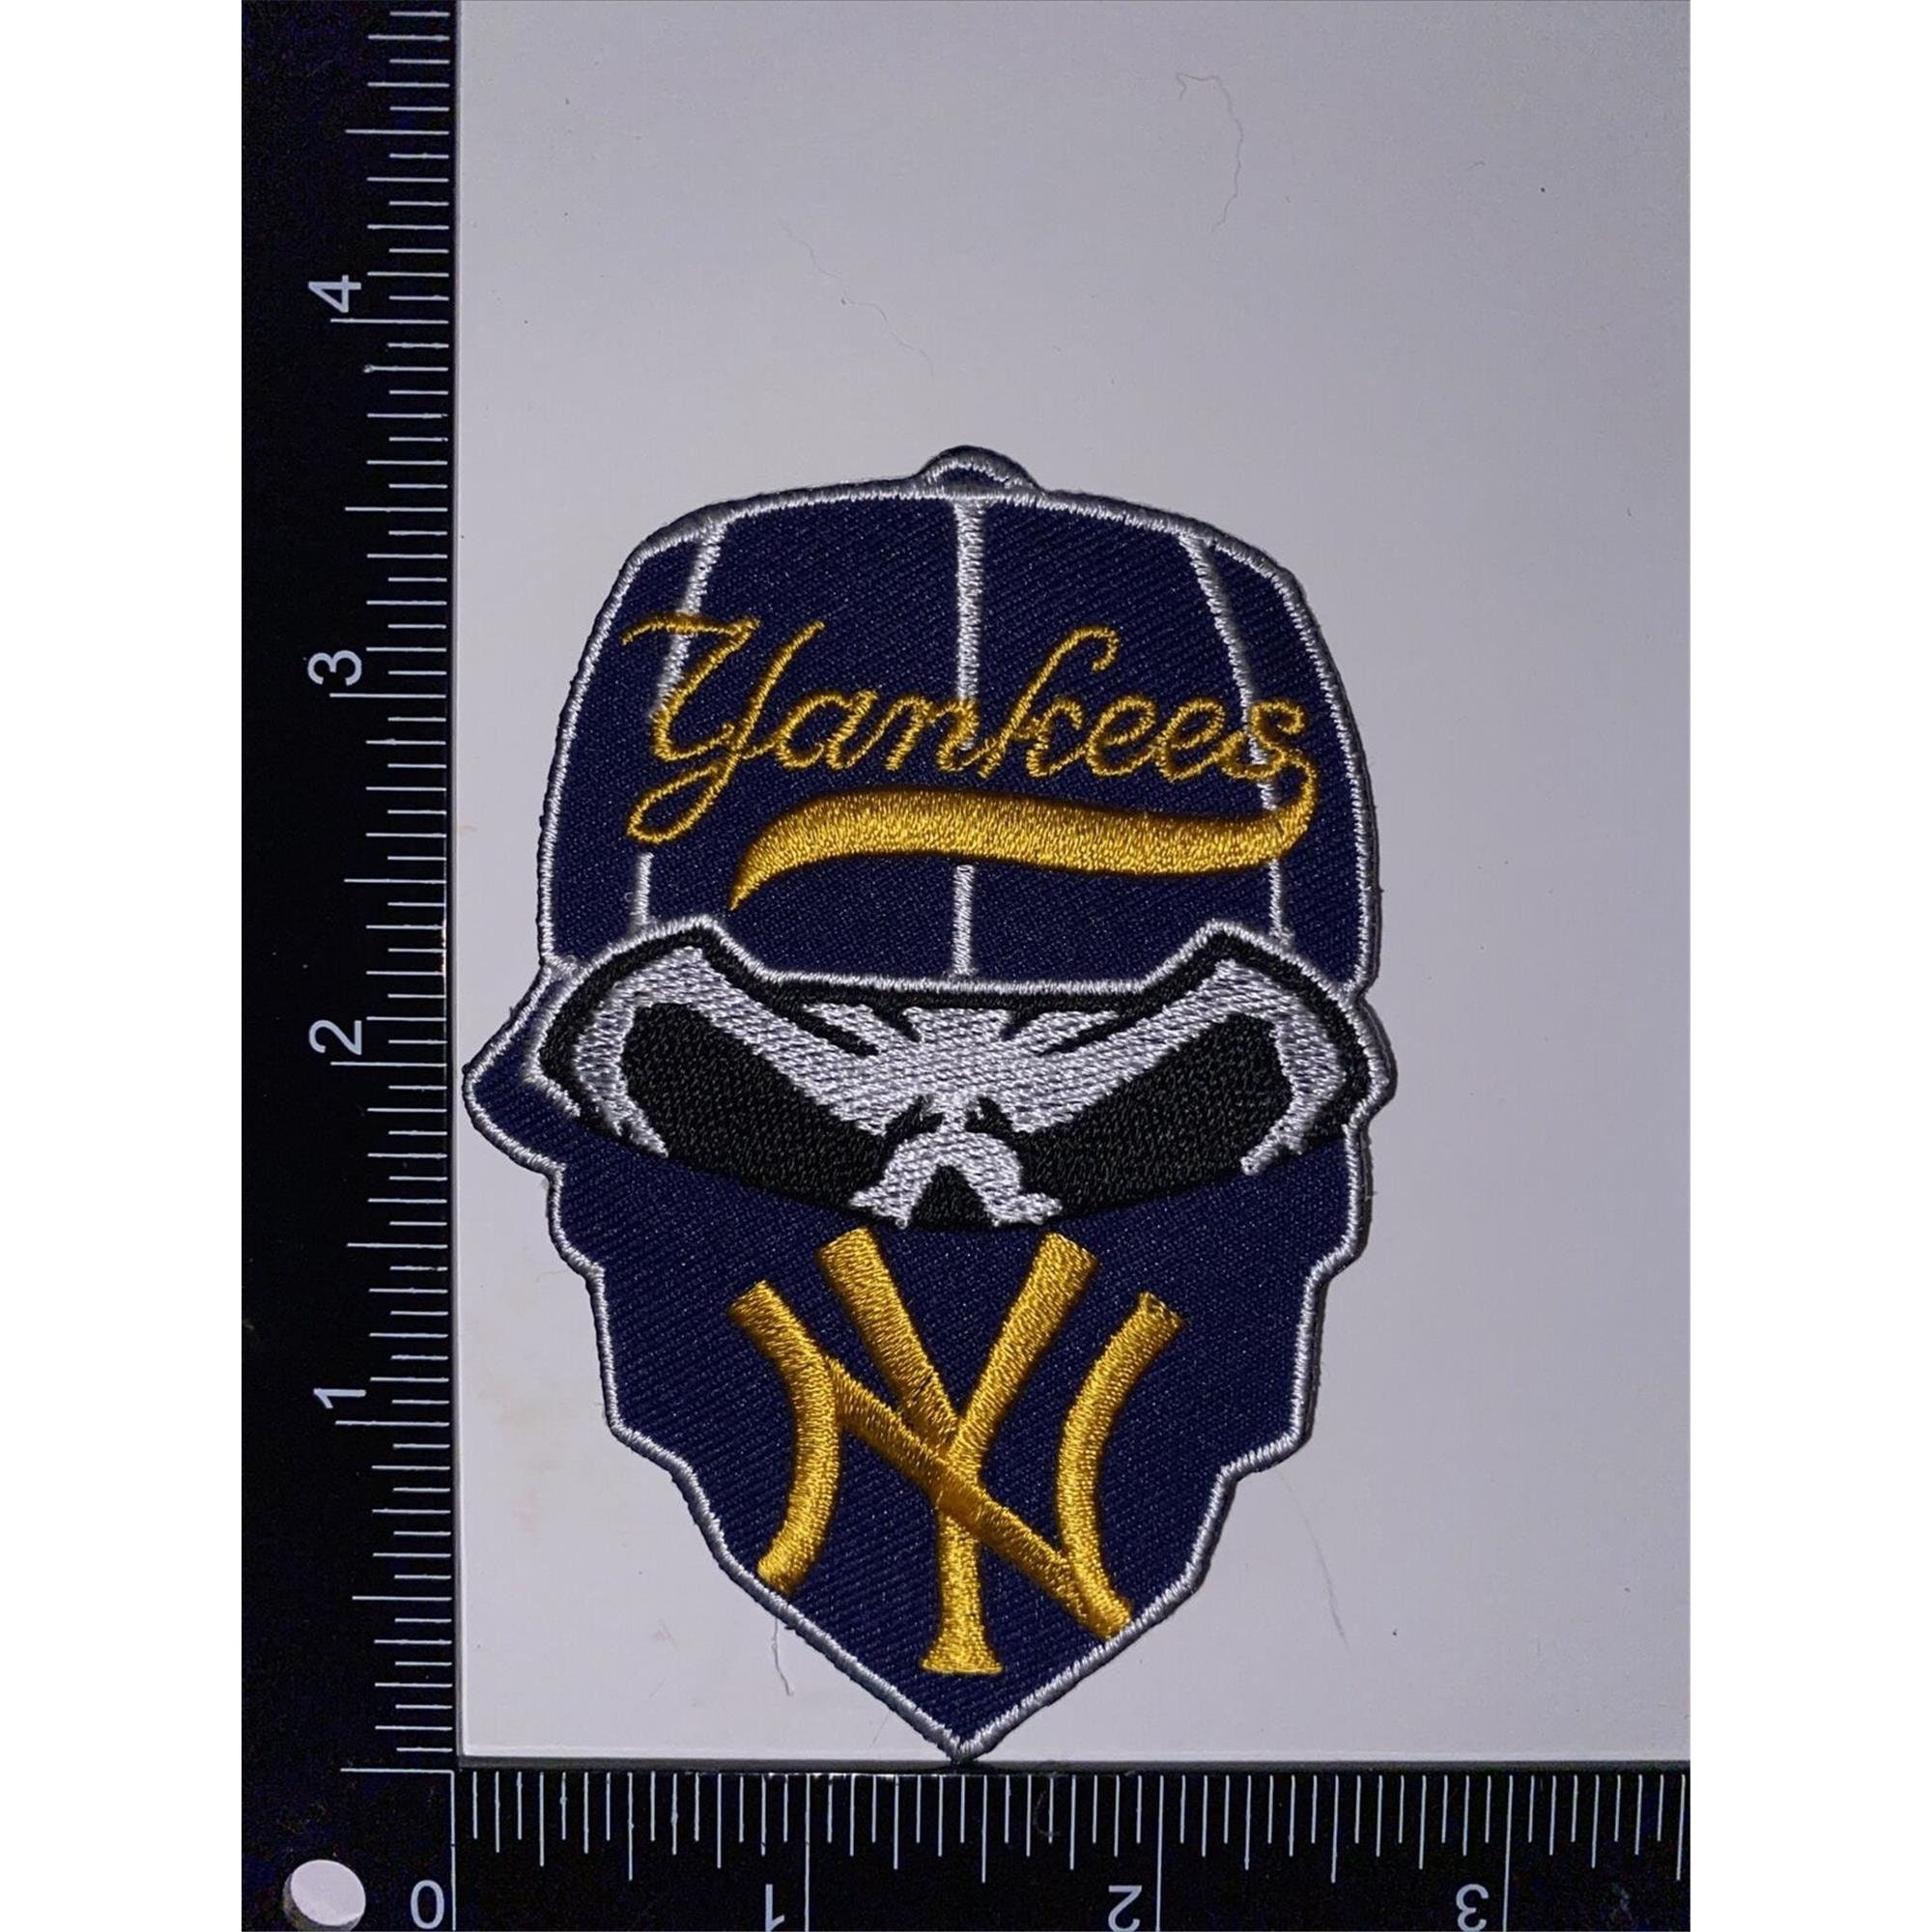 I love NY Logo Iron-on Sticker (heat transfer) – Customeazy